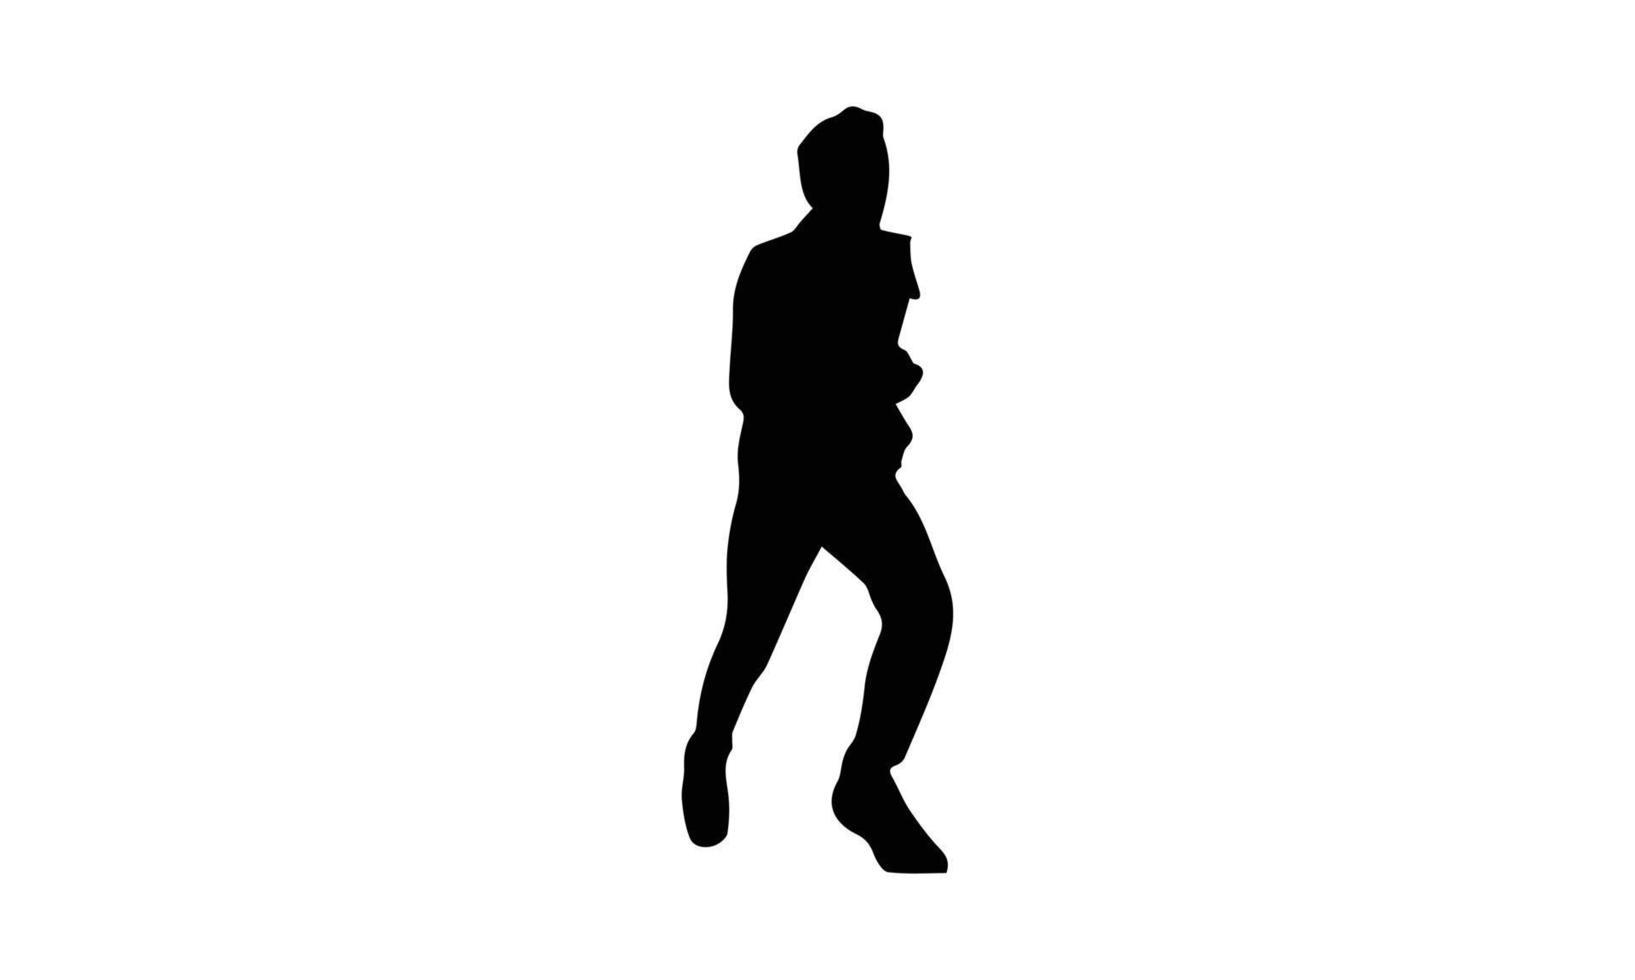 corredores en sprint hombres sobre fondo blanco. ilustración vectorial vector